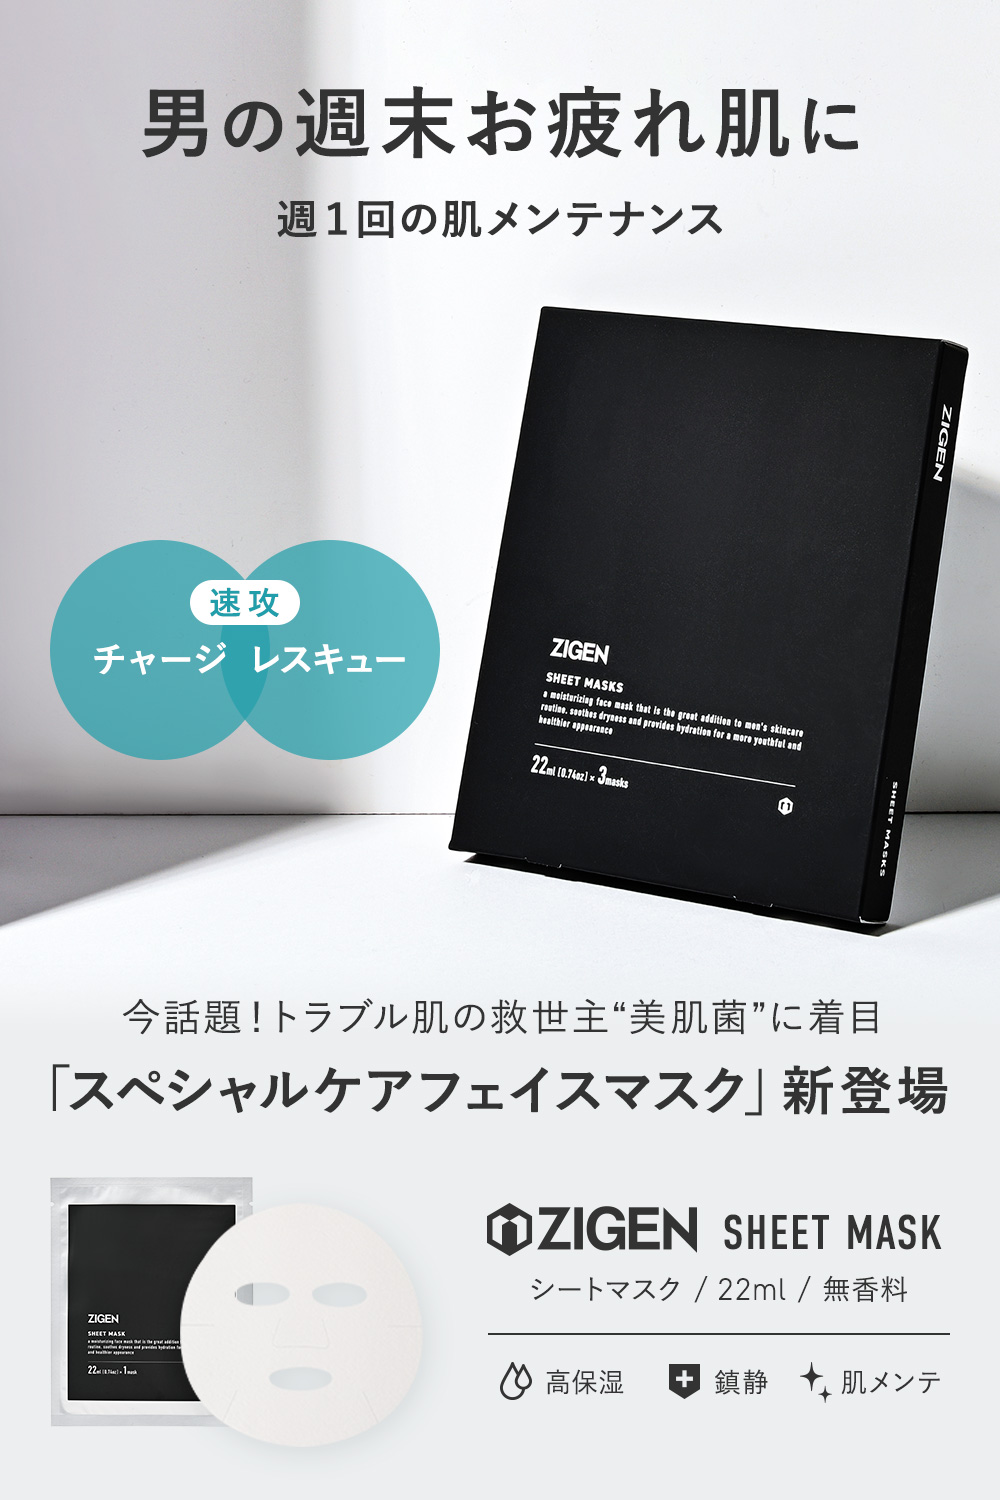 週1回の肌メンテナンス「ZIGEN スペシャルケアフェイスマスク」